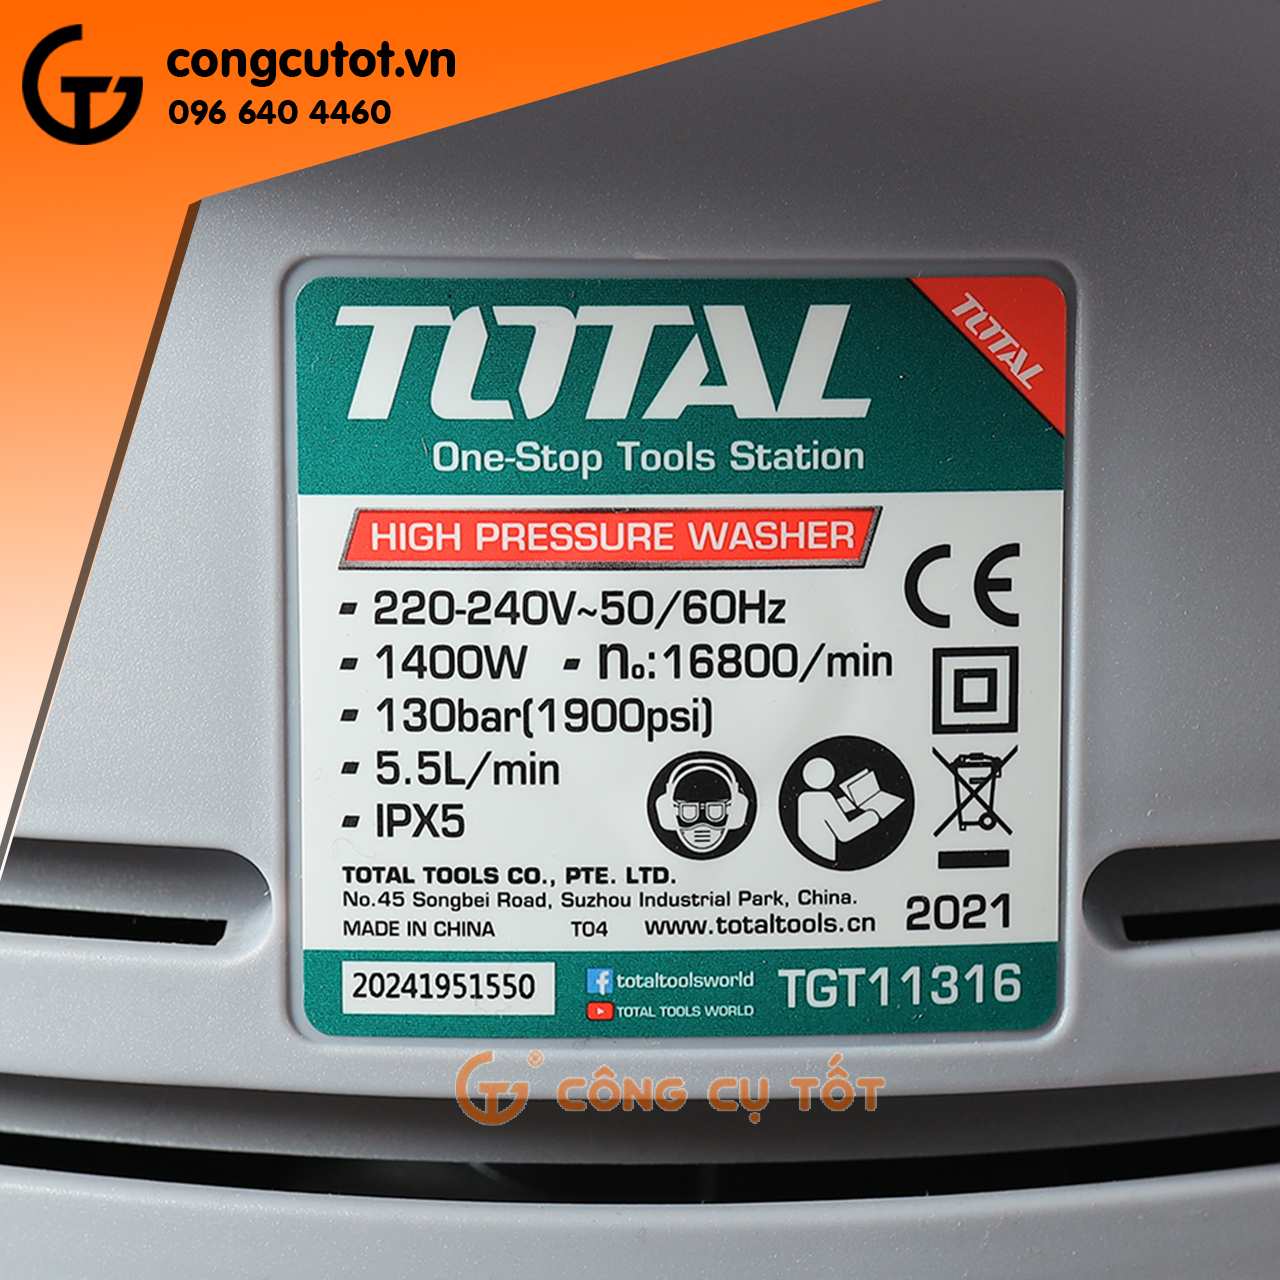 Thông số máy xịt rửaTotal TGT11316